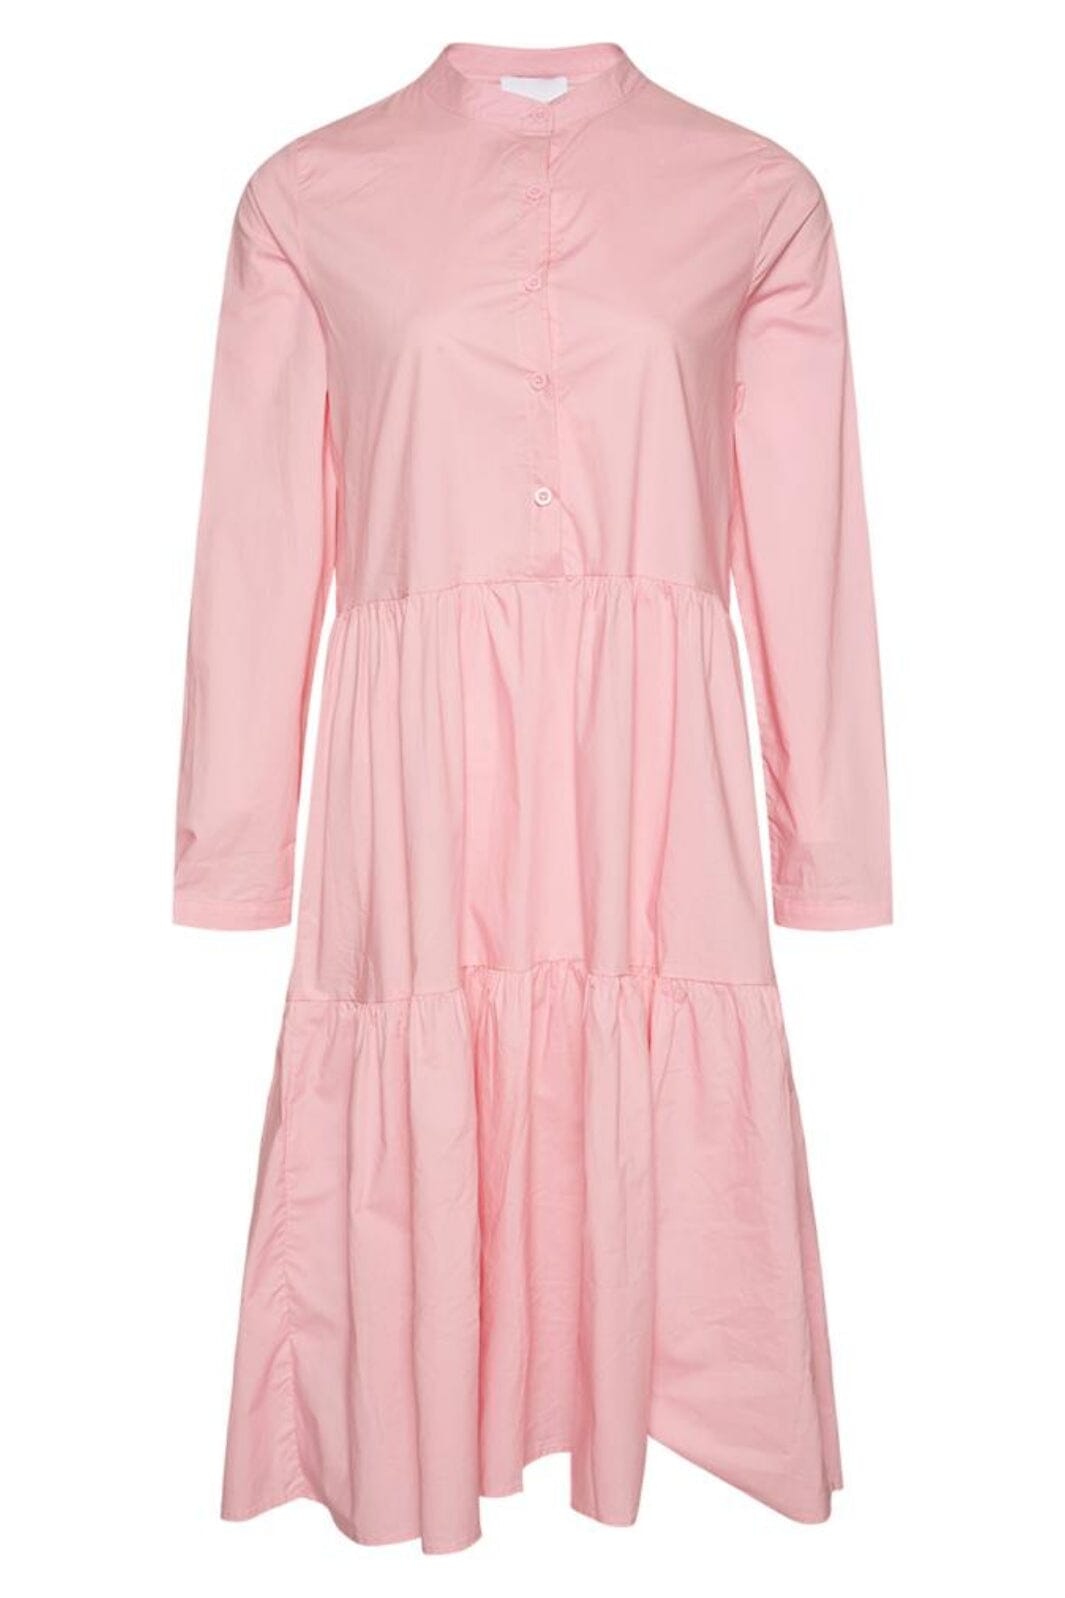 Noella - Lipe Dress - 588 Light Pink Kjoler 